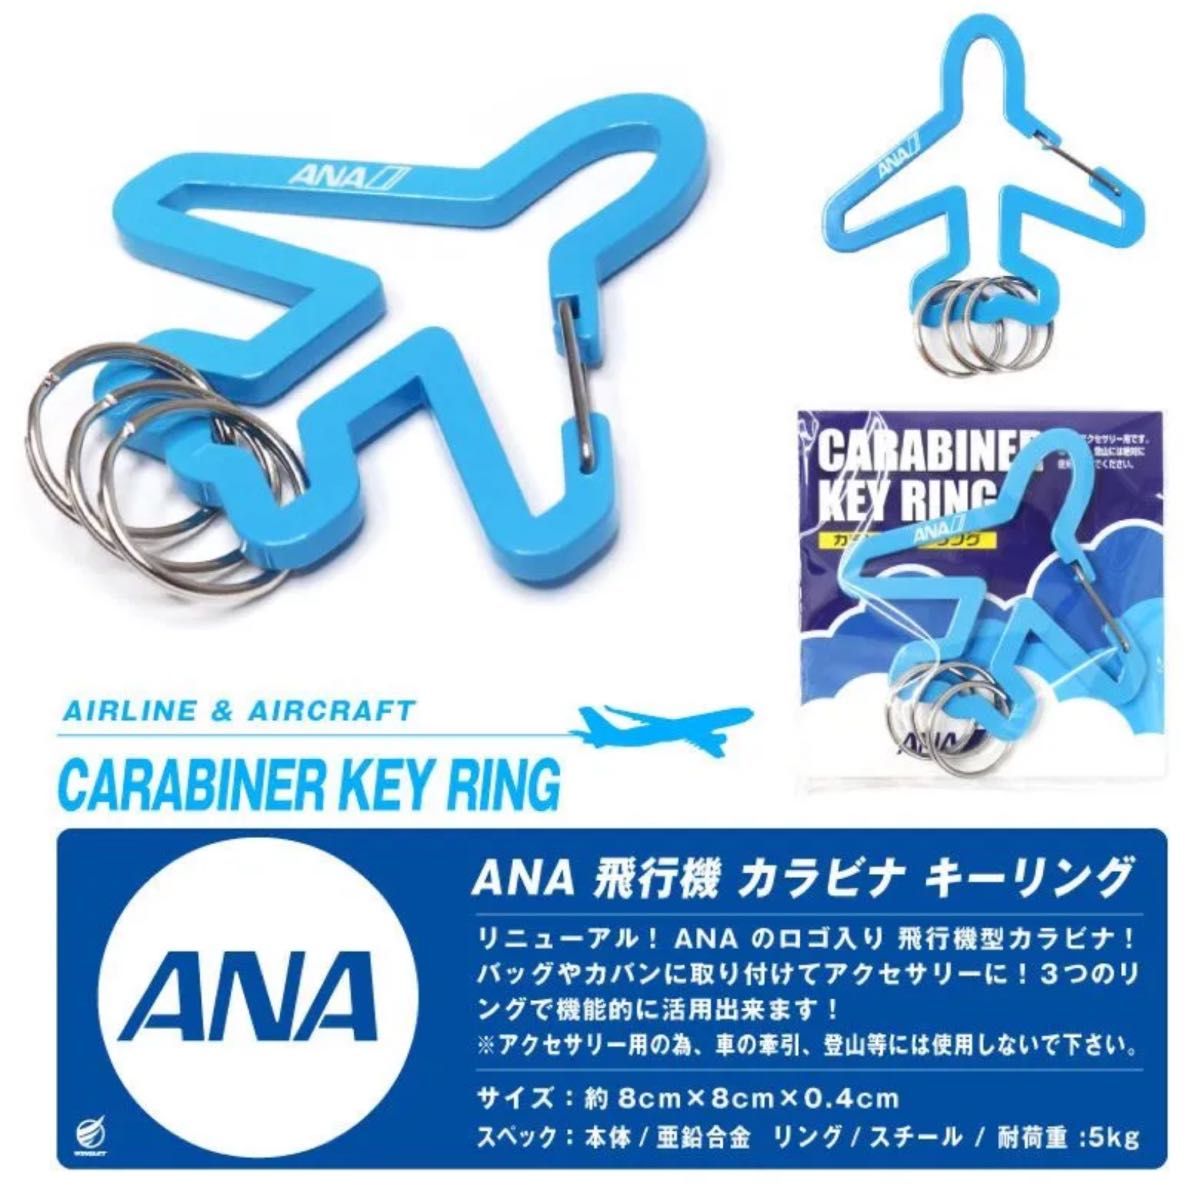 ANA 飛行機型 カラビナ キーリング 全日空 CARABINER KEY RING キーホルダー アクセサリー エアライン